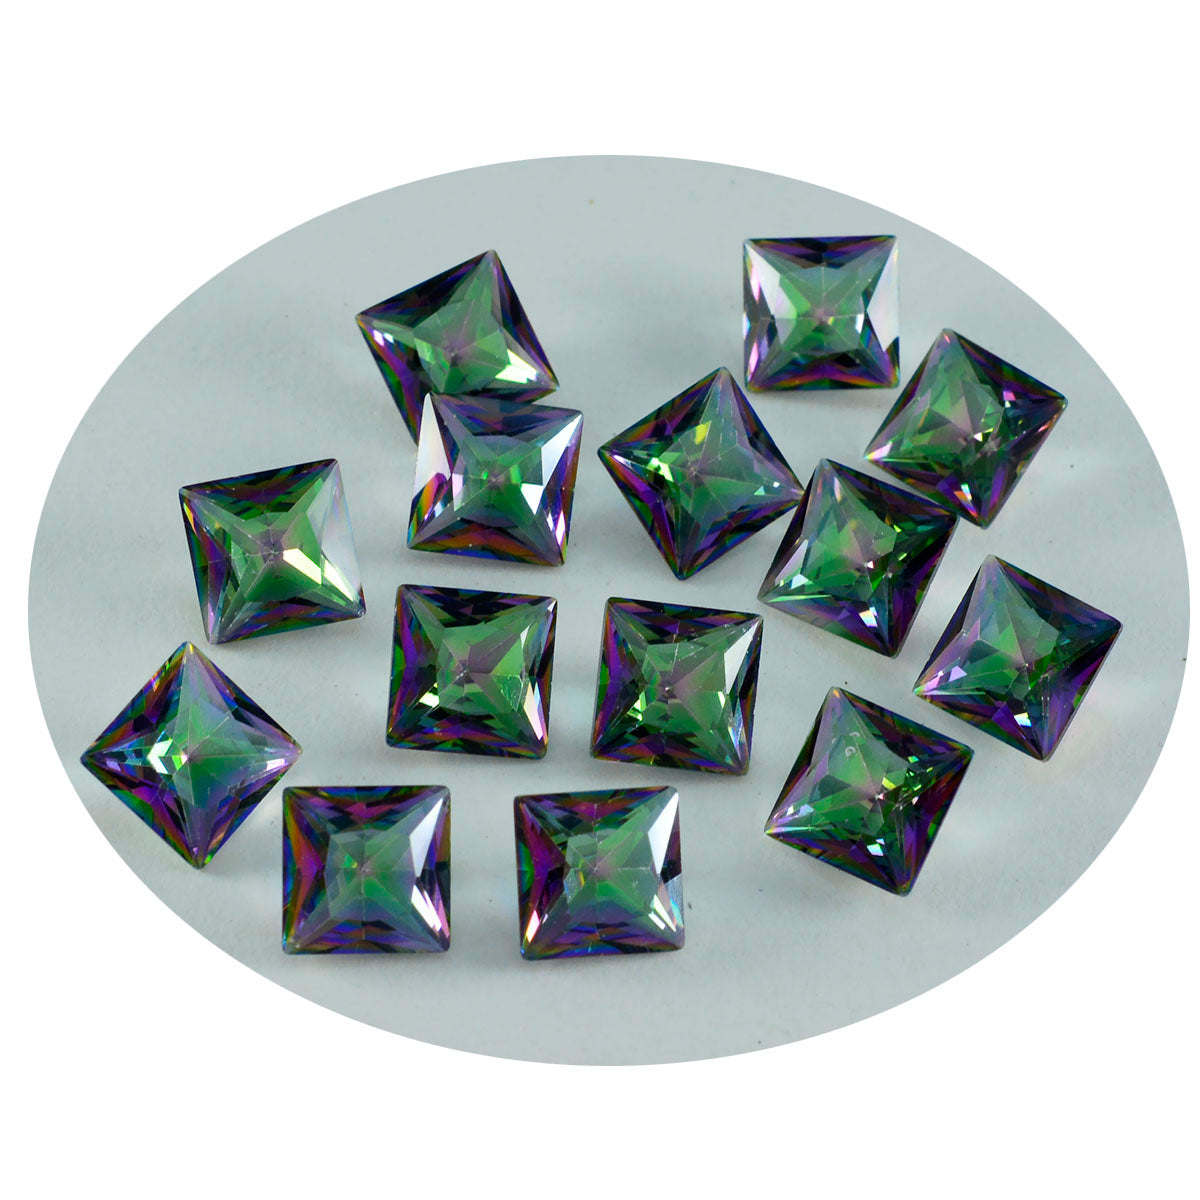 Riyogems 1 Stück mehrfarbiger mystischer Quarz, facettiert, 6 x 6 mm, quadratische Form, schöne, hochwertige lose Edelsteine